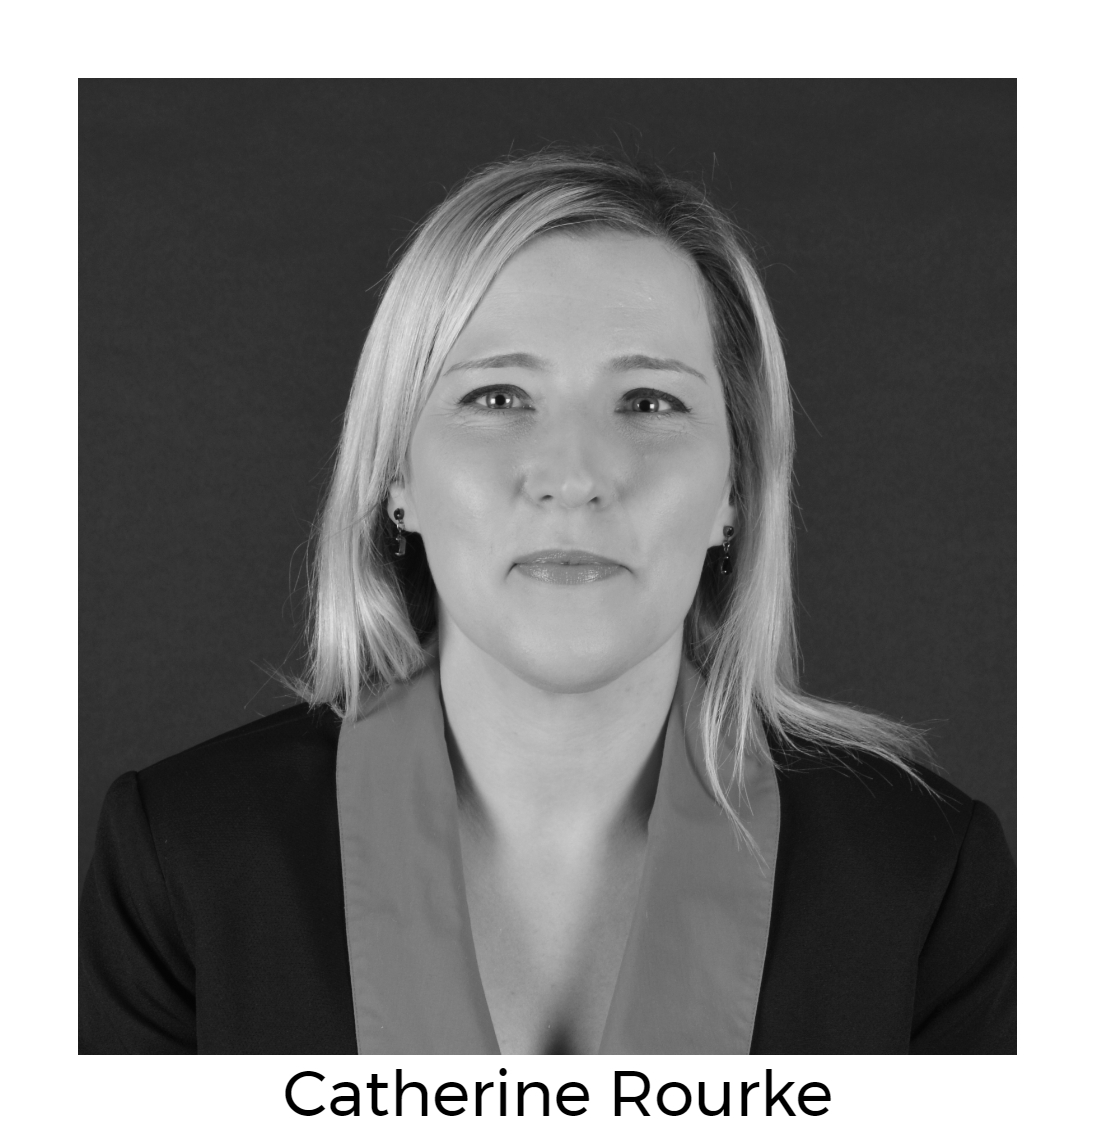 Catherine Rourke